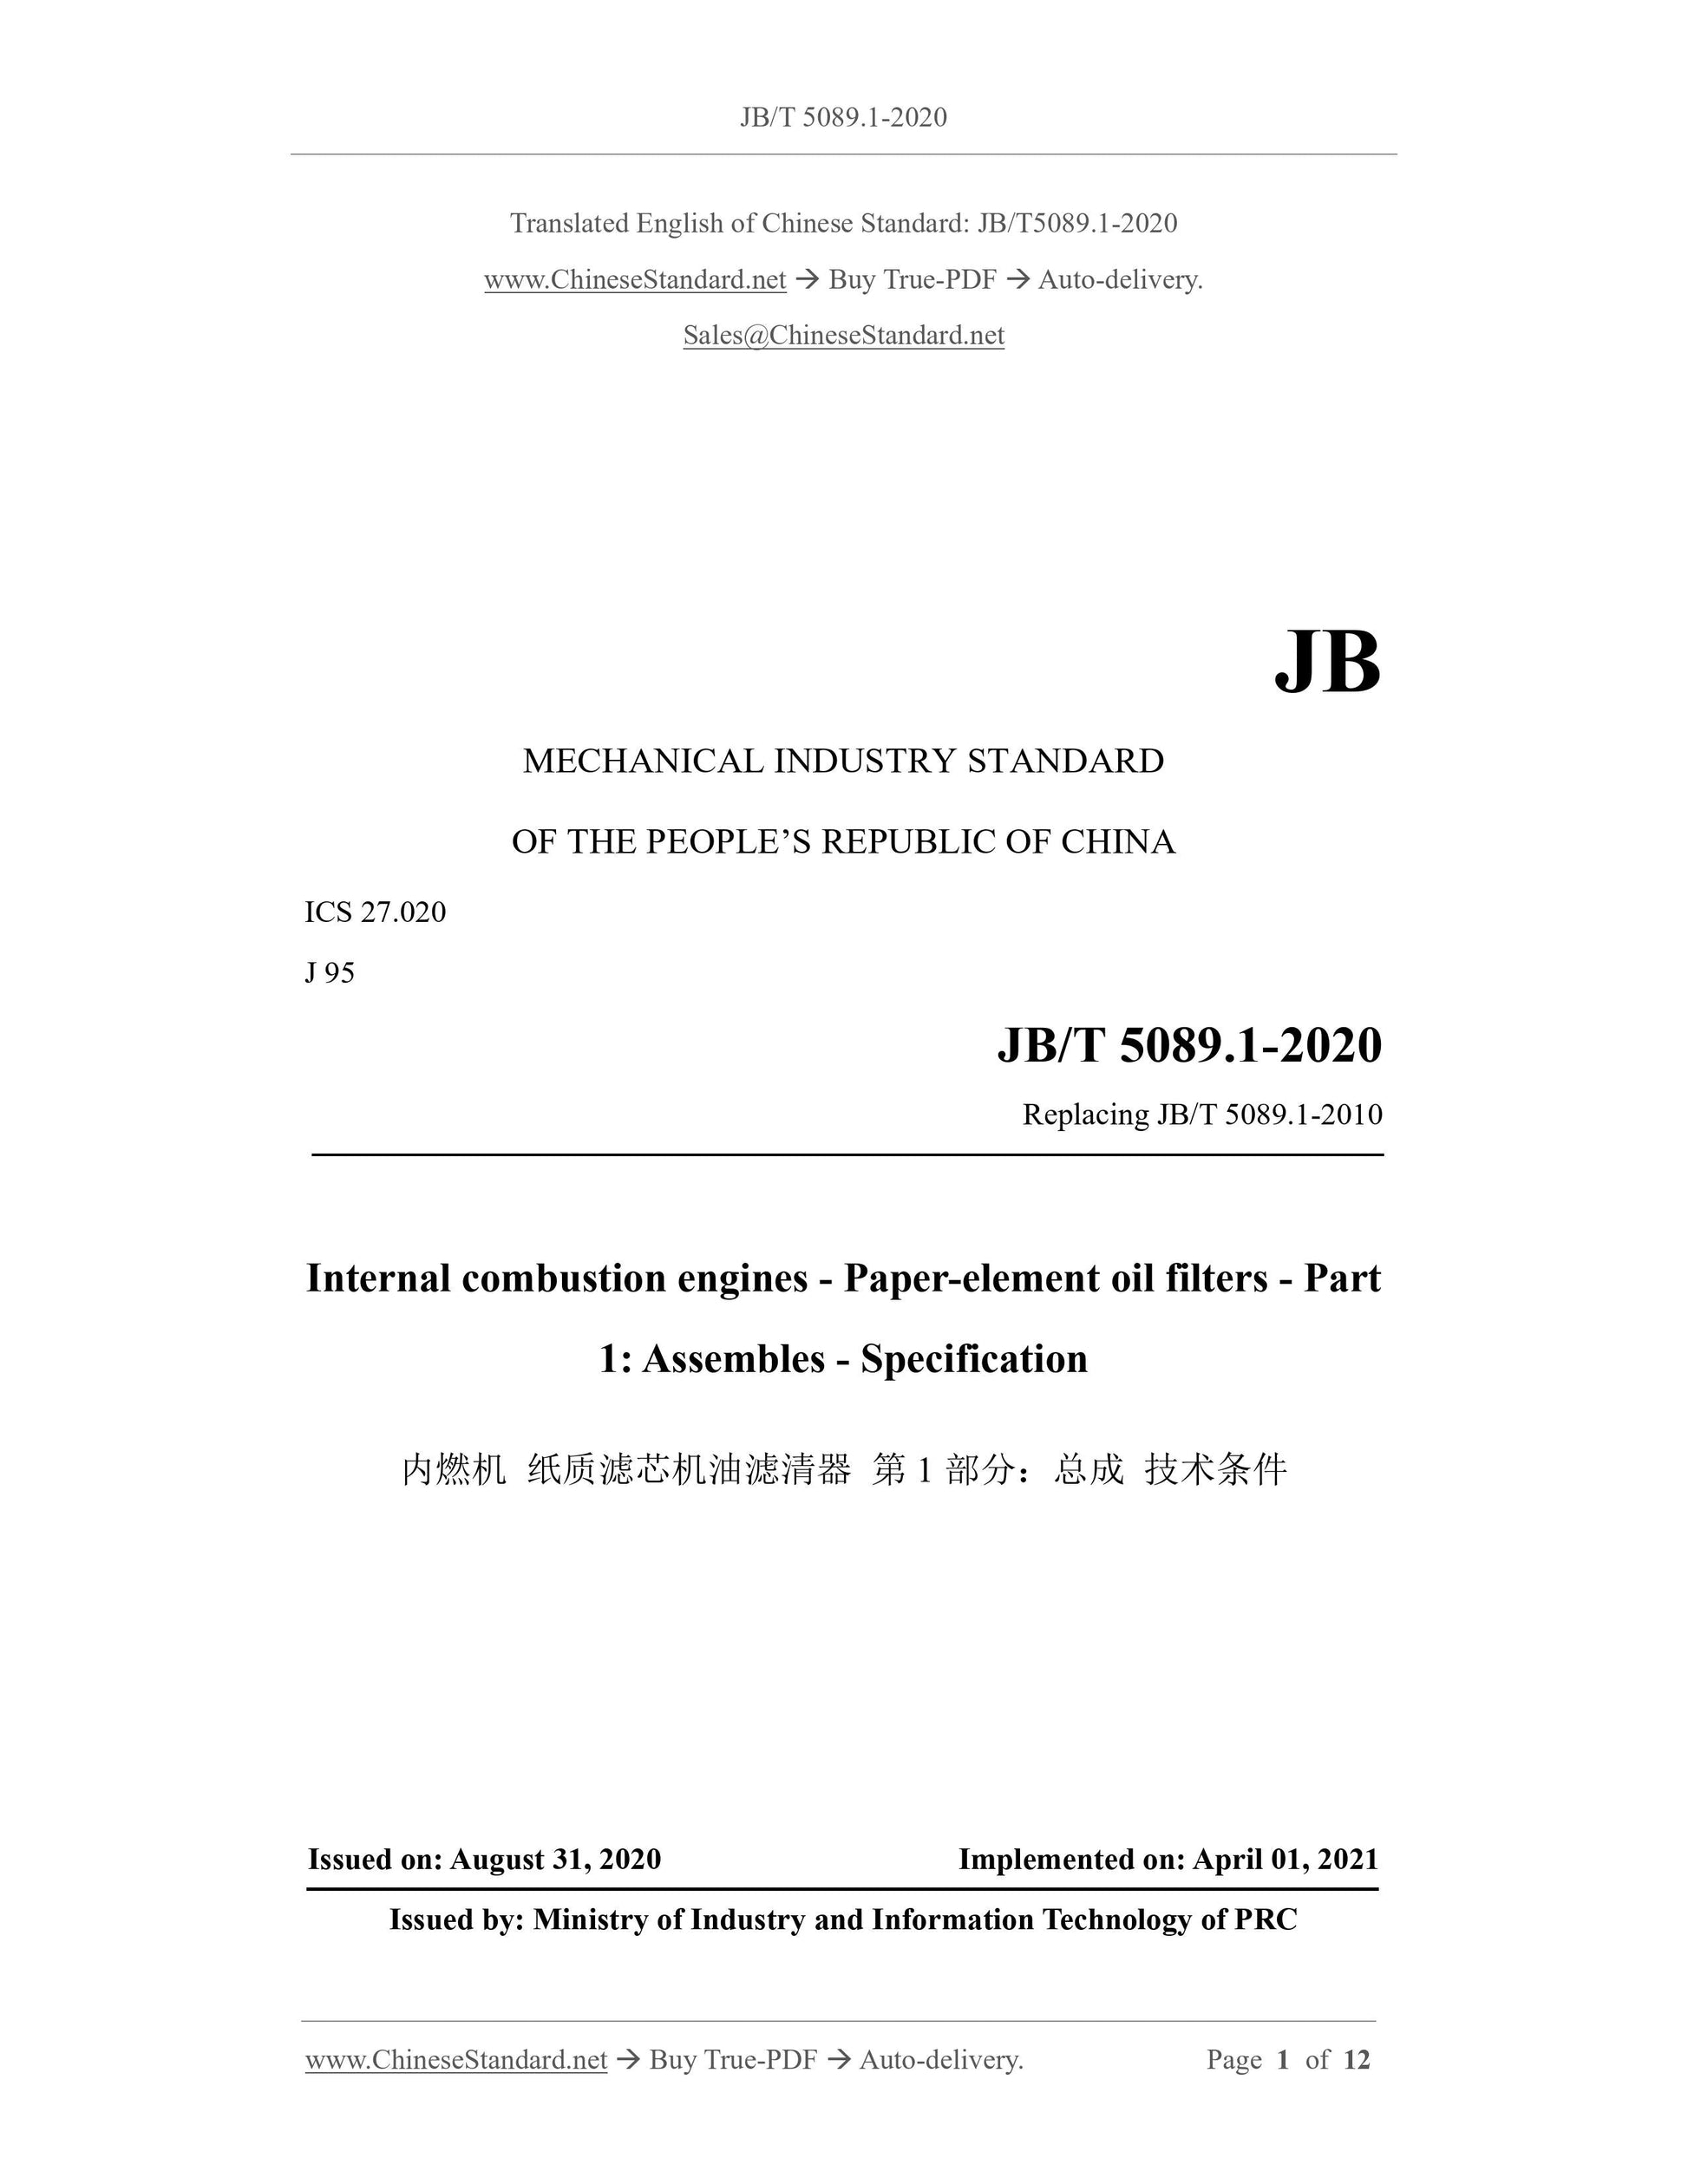 JB/T 5089.1-2020 Page 1